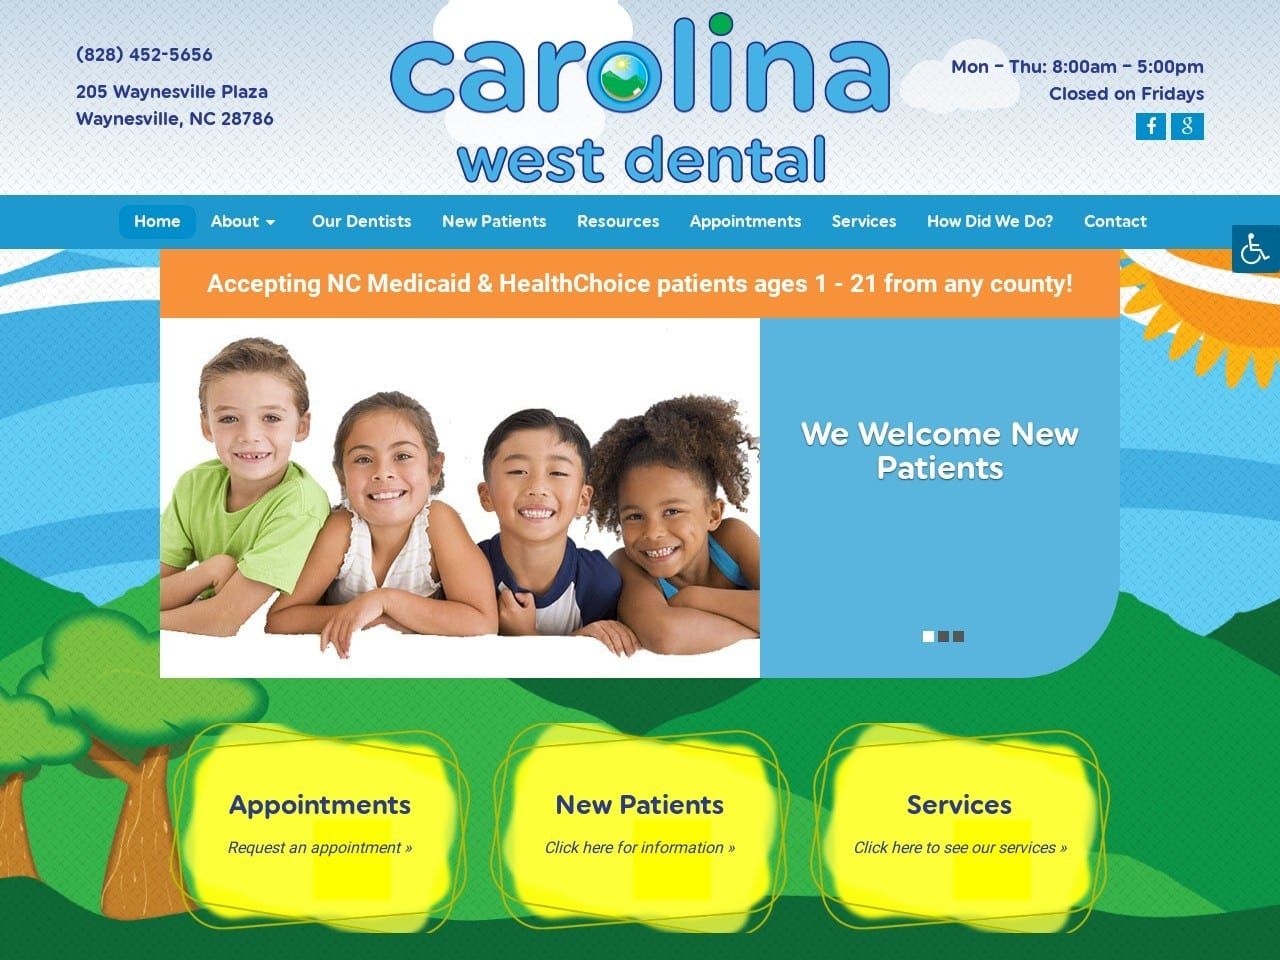 Carolina West Dental Website Screenshot from carolinawestdental.com